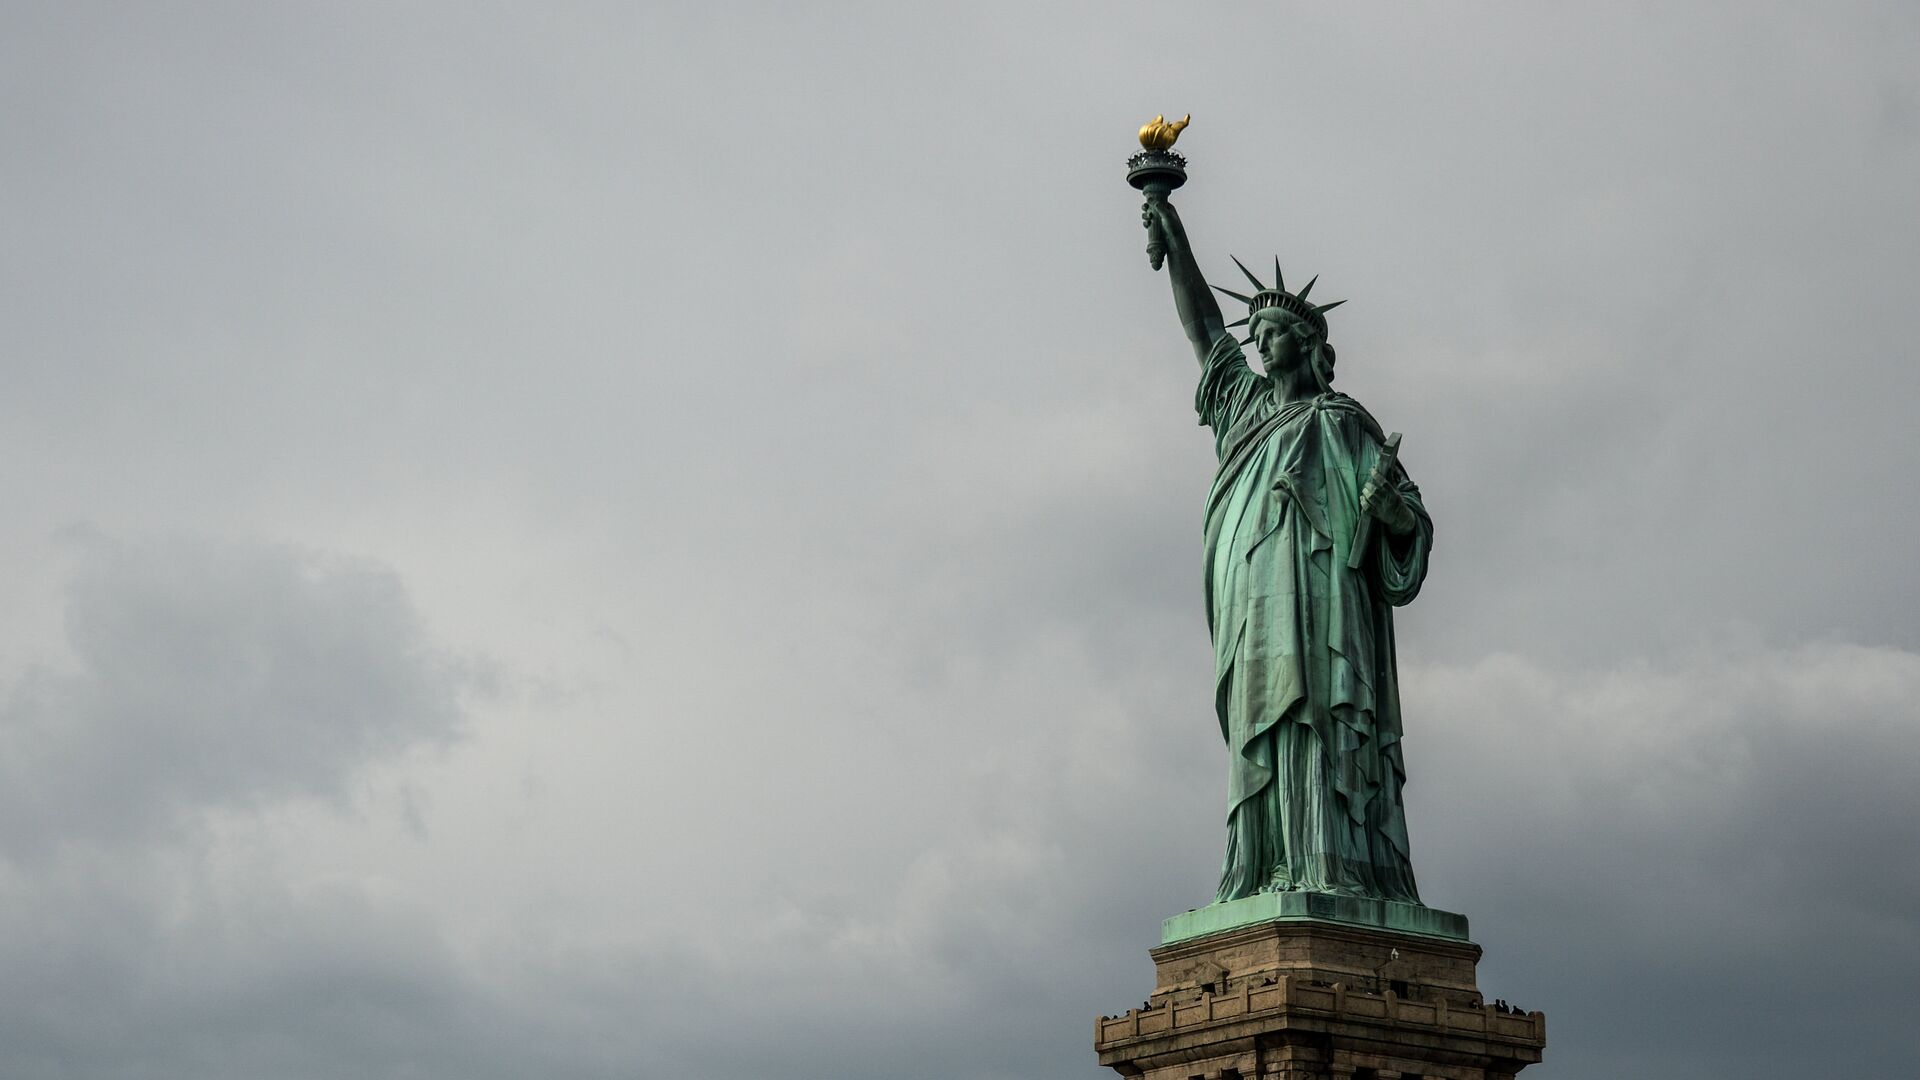 Статуя Свободы в Нью-Йорке. - Sputnik Беларусь, 1920, 26.12.2021